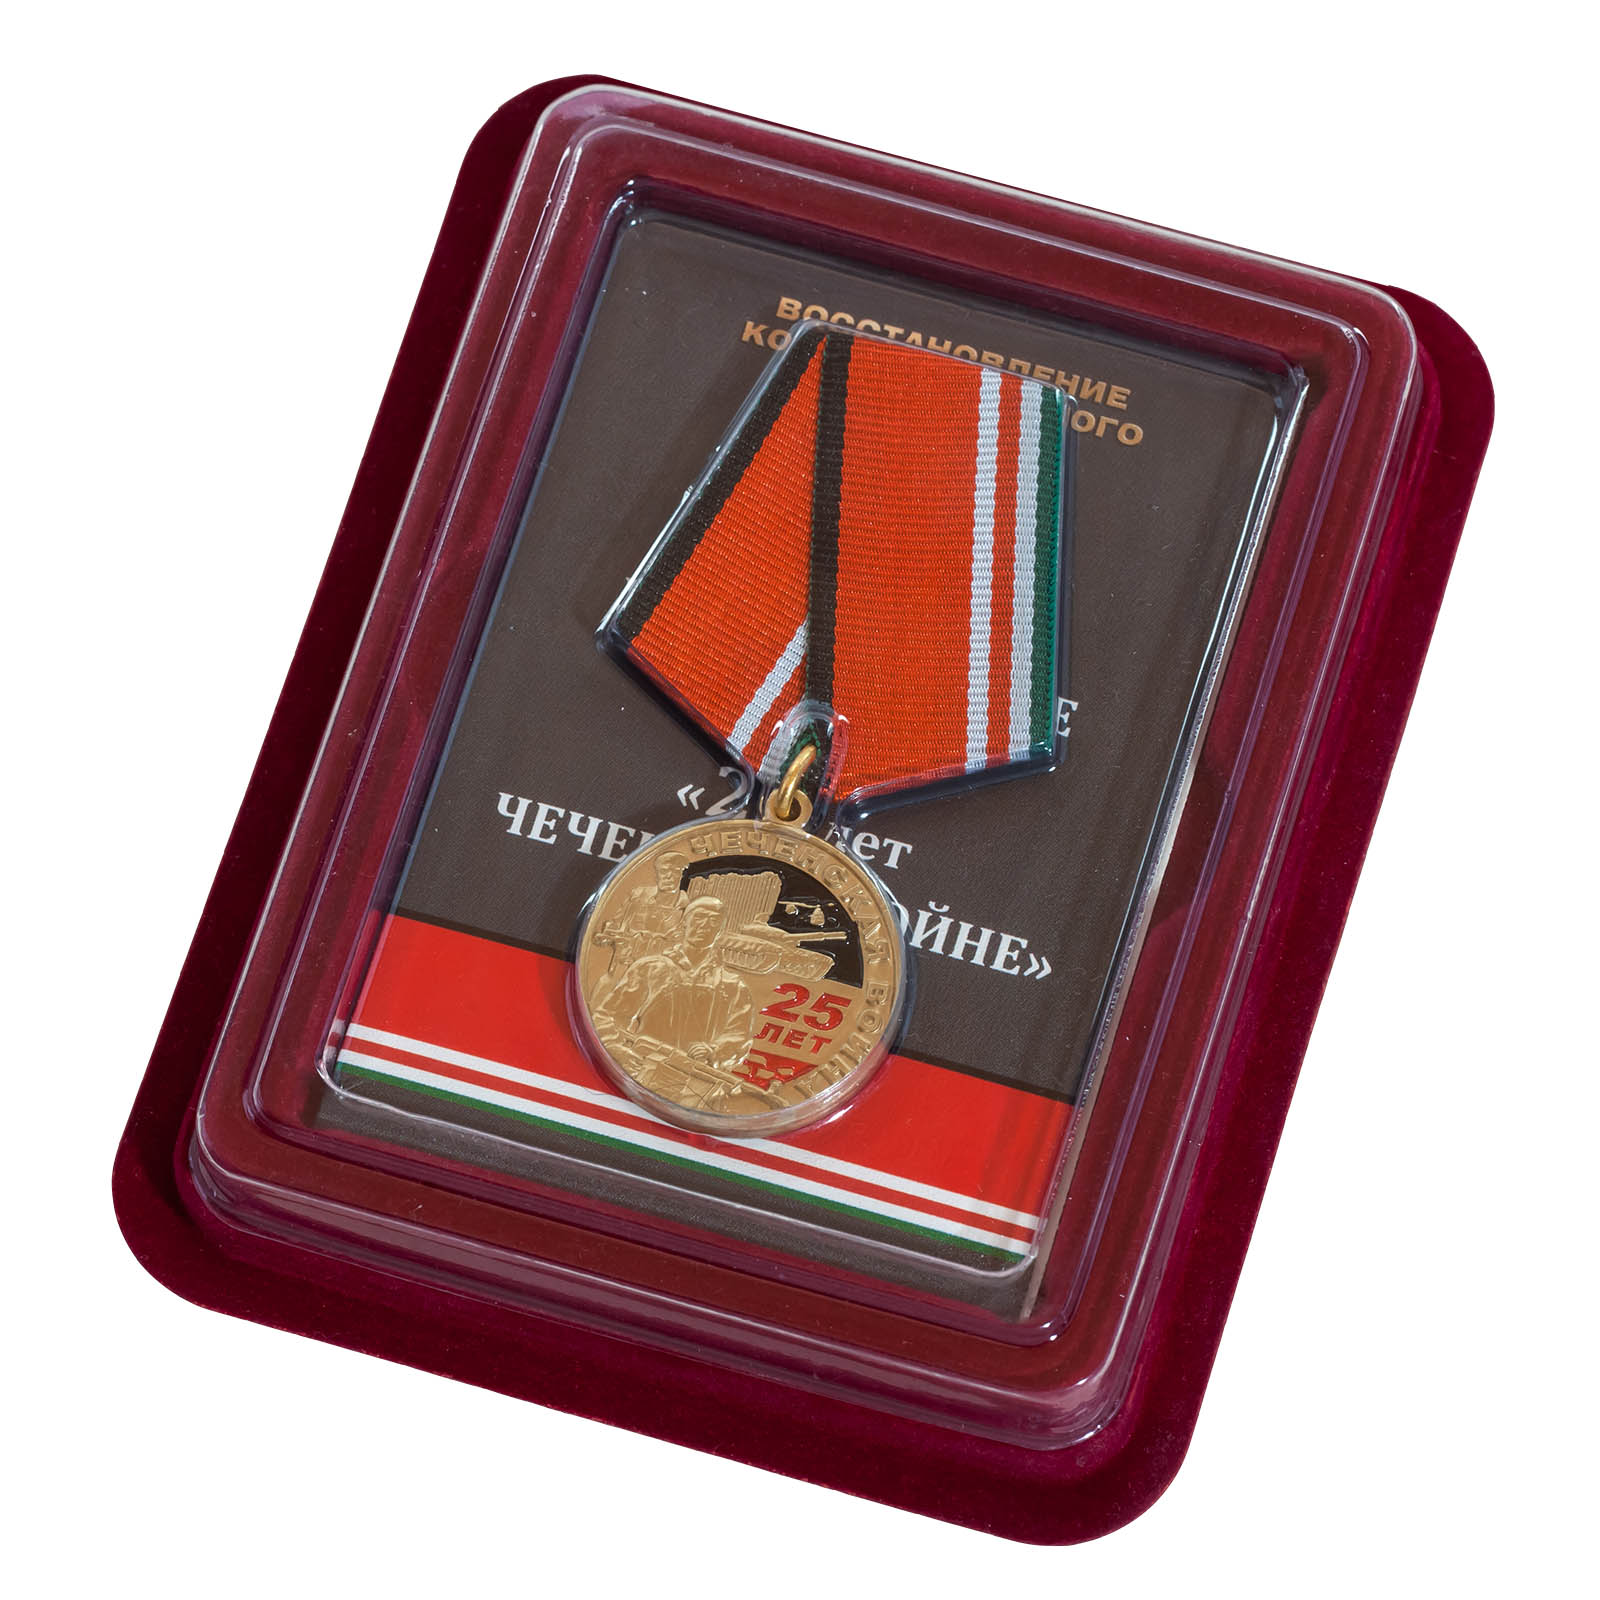 Заказать медаль "25 лет. Чеченская война" в наградном бордовом футляре